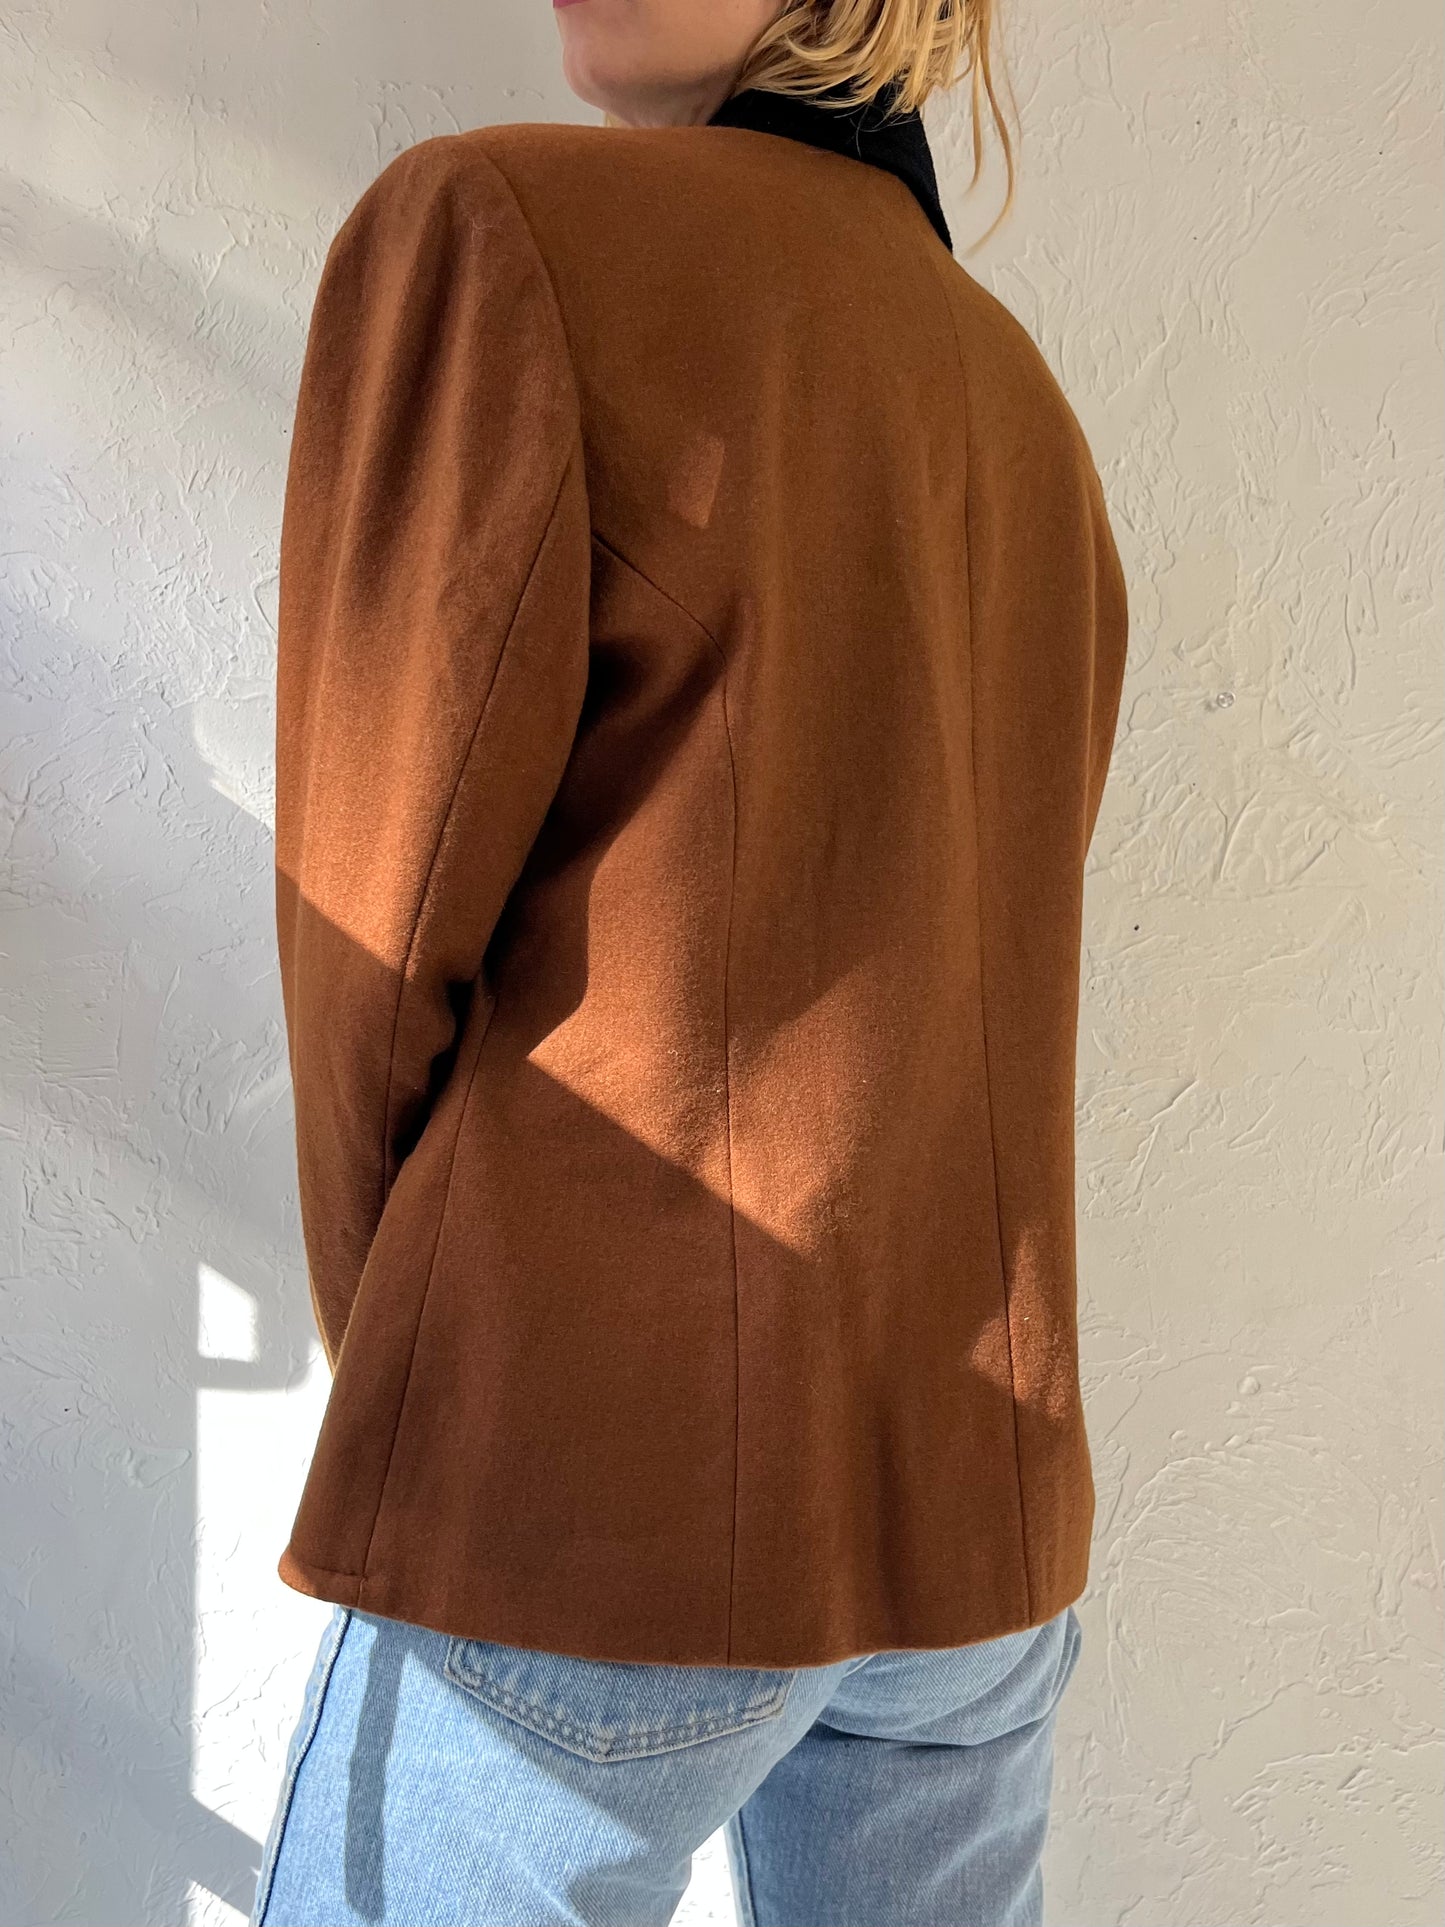 90s 'No One' Brown Wool Blazer Jacket / Medium